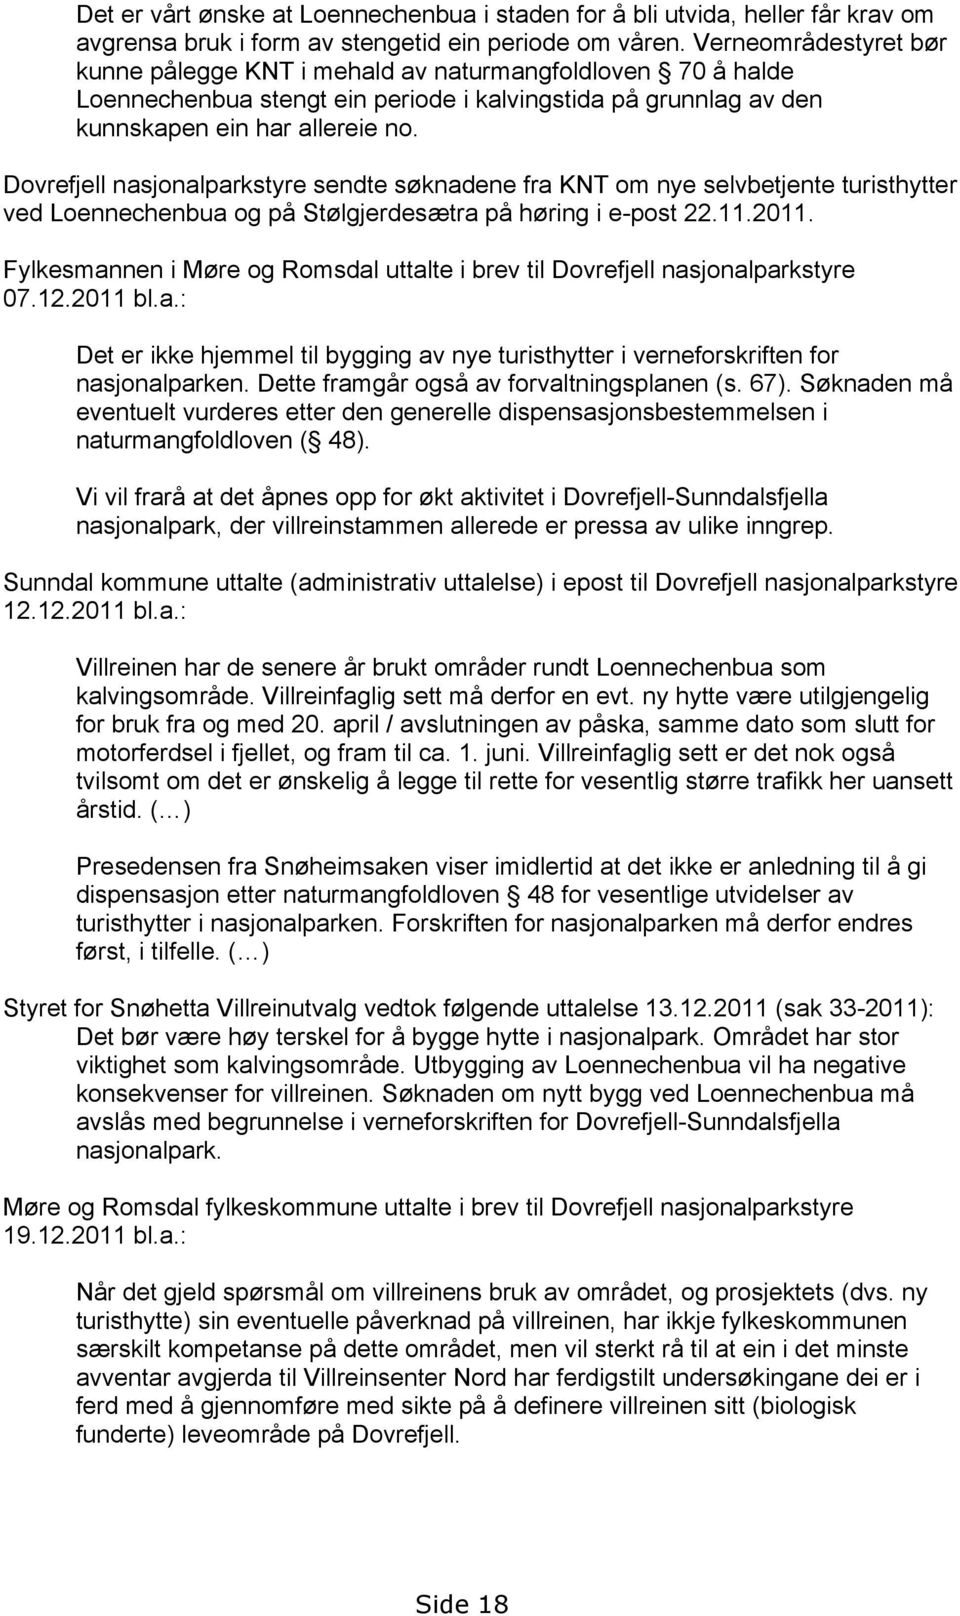 Dovrefjell nasjonalparkstyre sendte søknadene fra KNT om nye selvbetjente turisthytter ved Loennechenbua og på Stølgjerdesætra på høring i e-post 22.11.2011.